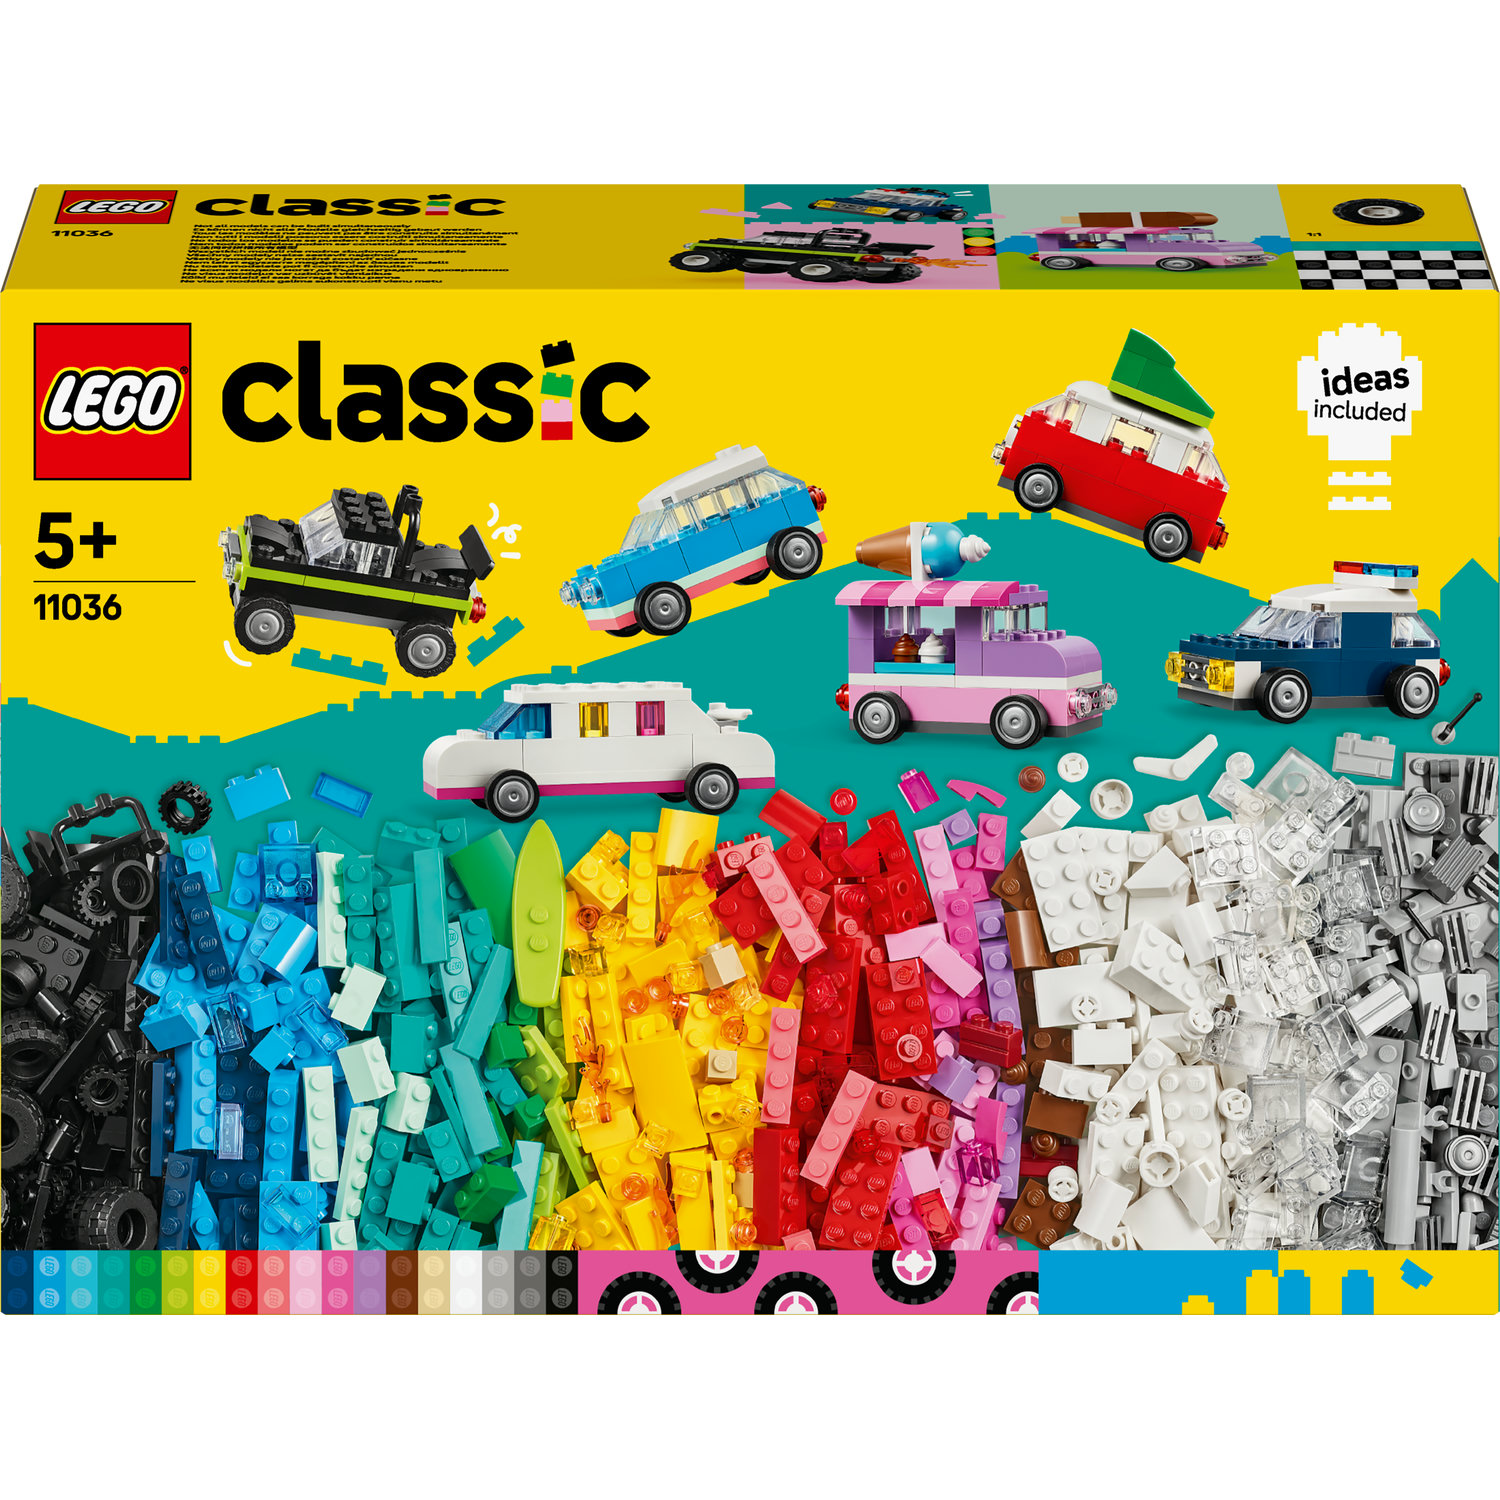 LEGO Classic Boîte de briques moyenne 10696